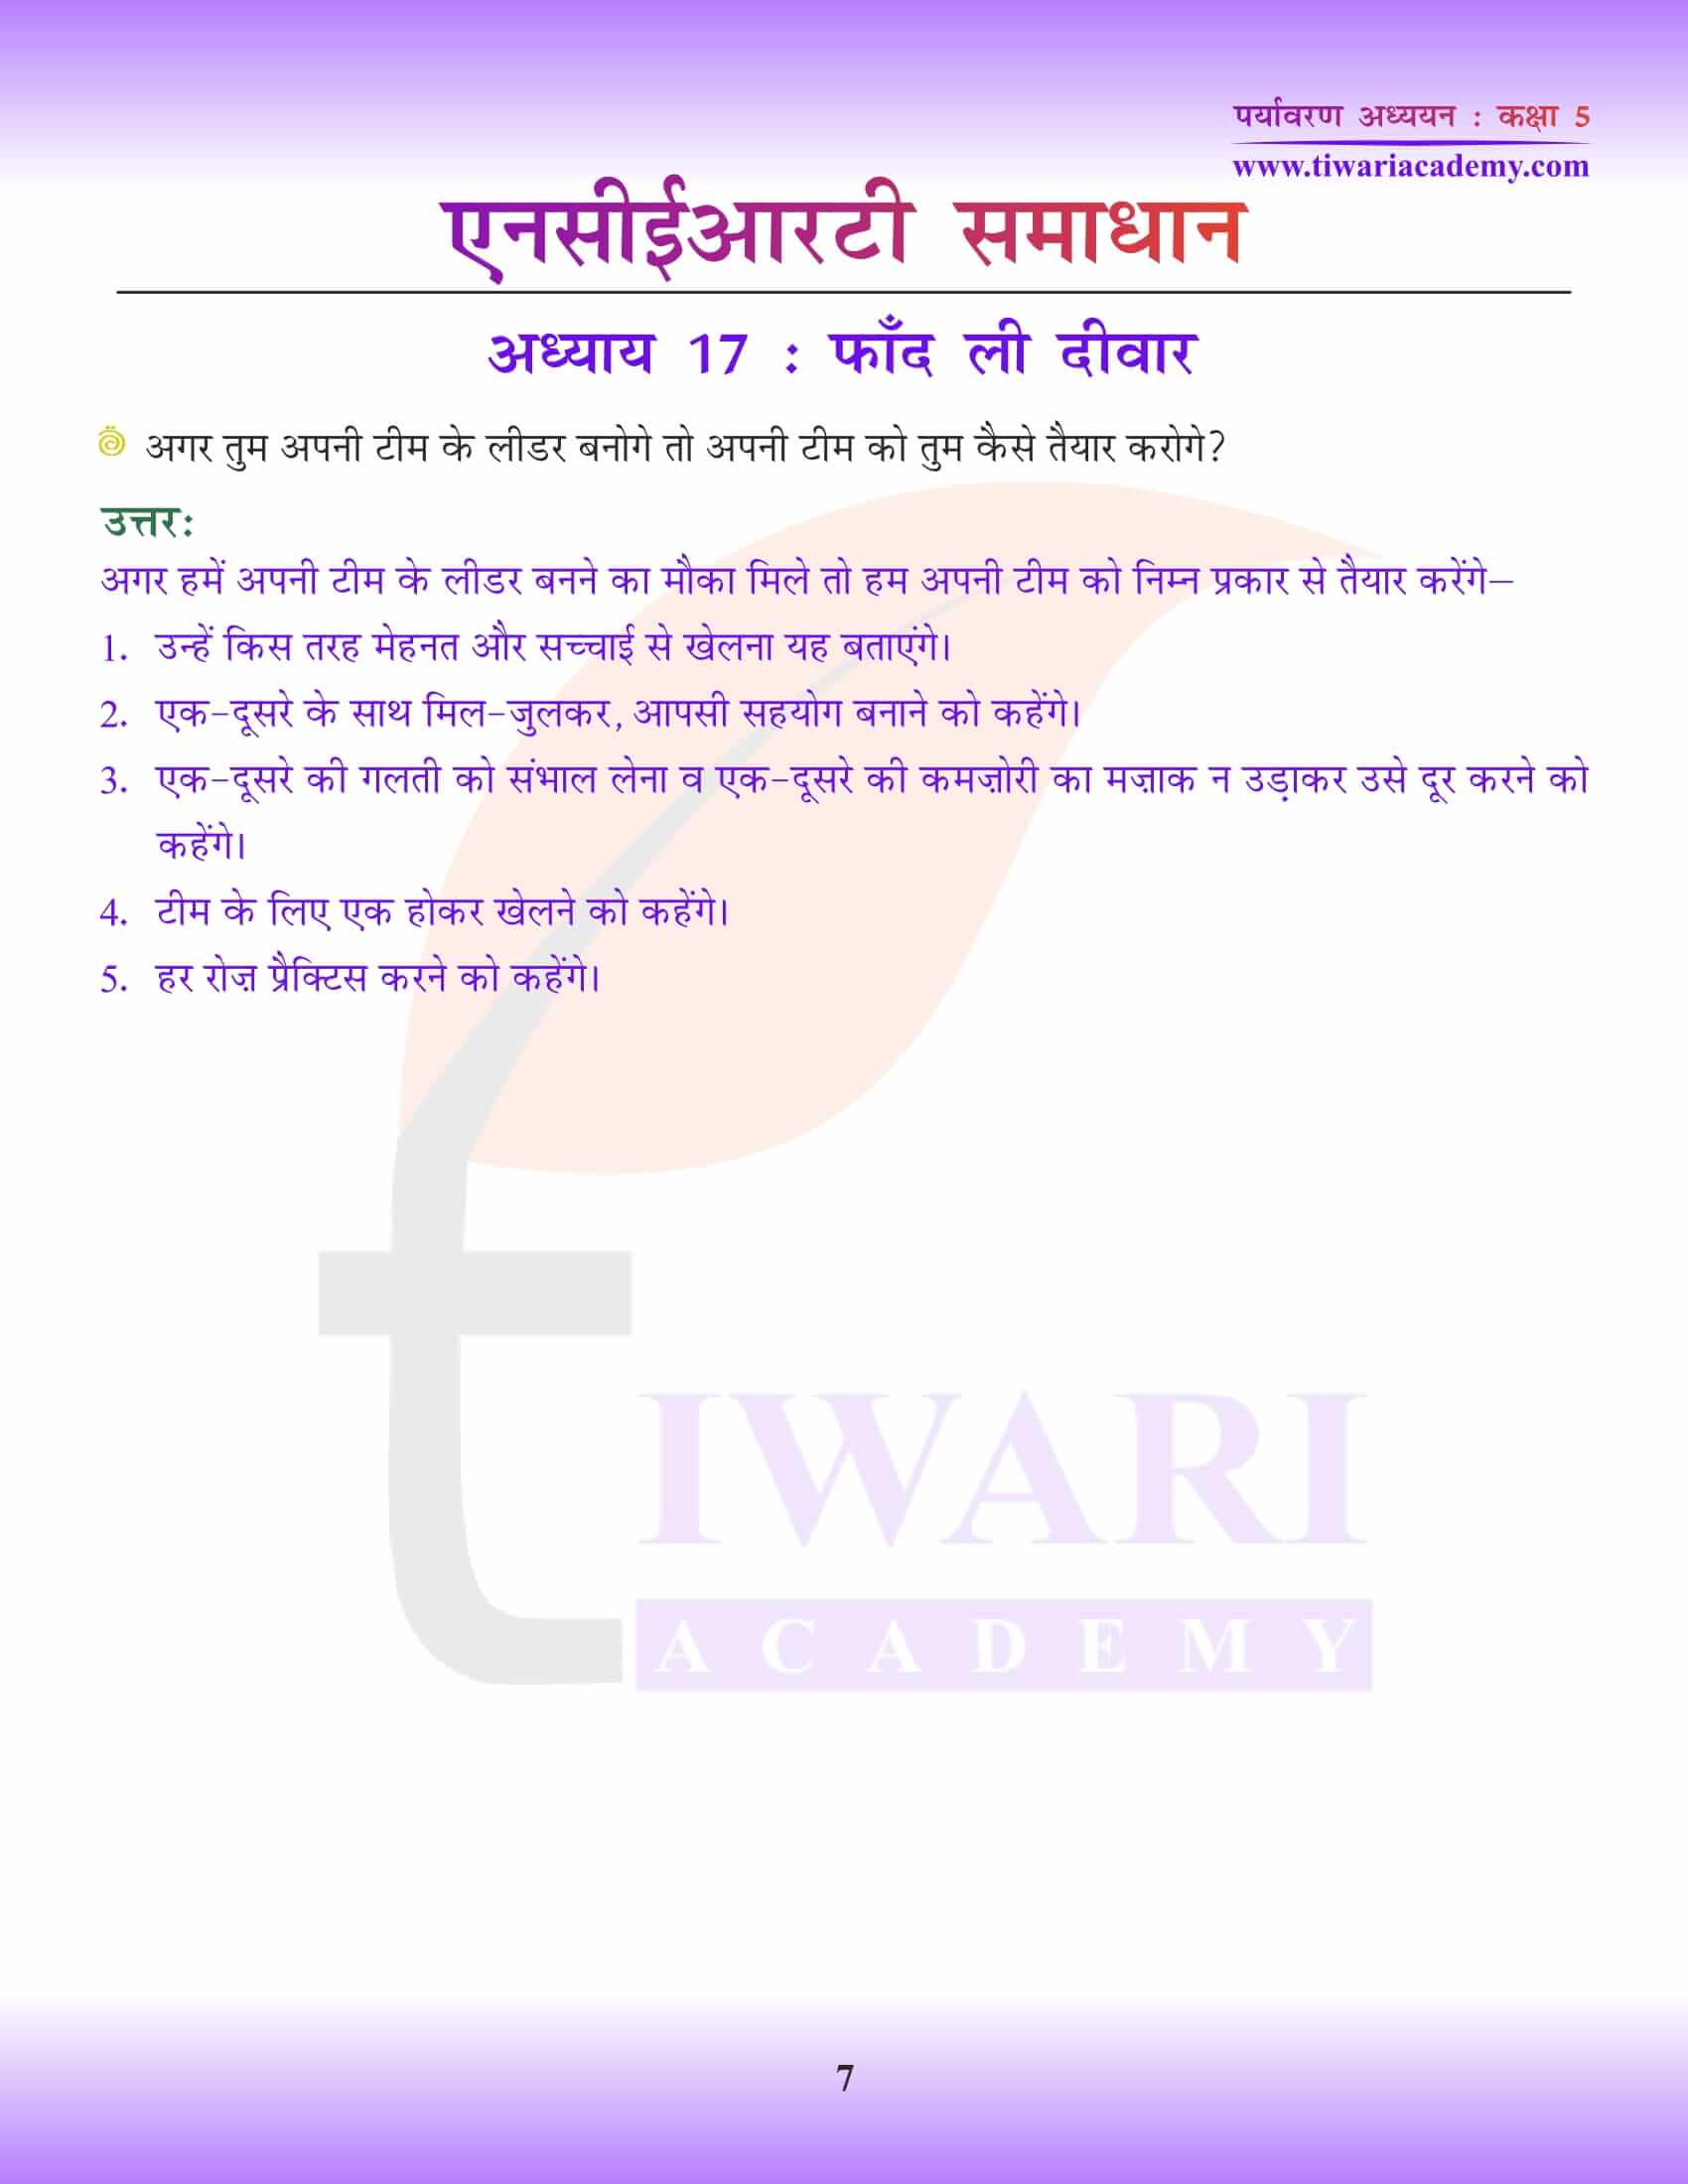 एनसीईआरटी समाधान कक्षा 5 ईवीएस अध्याय 17 हिंदी में